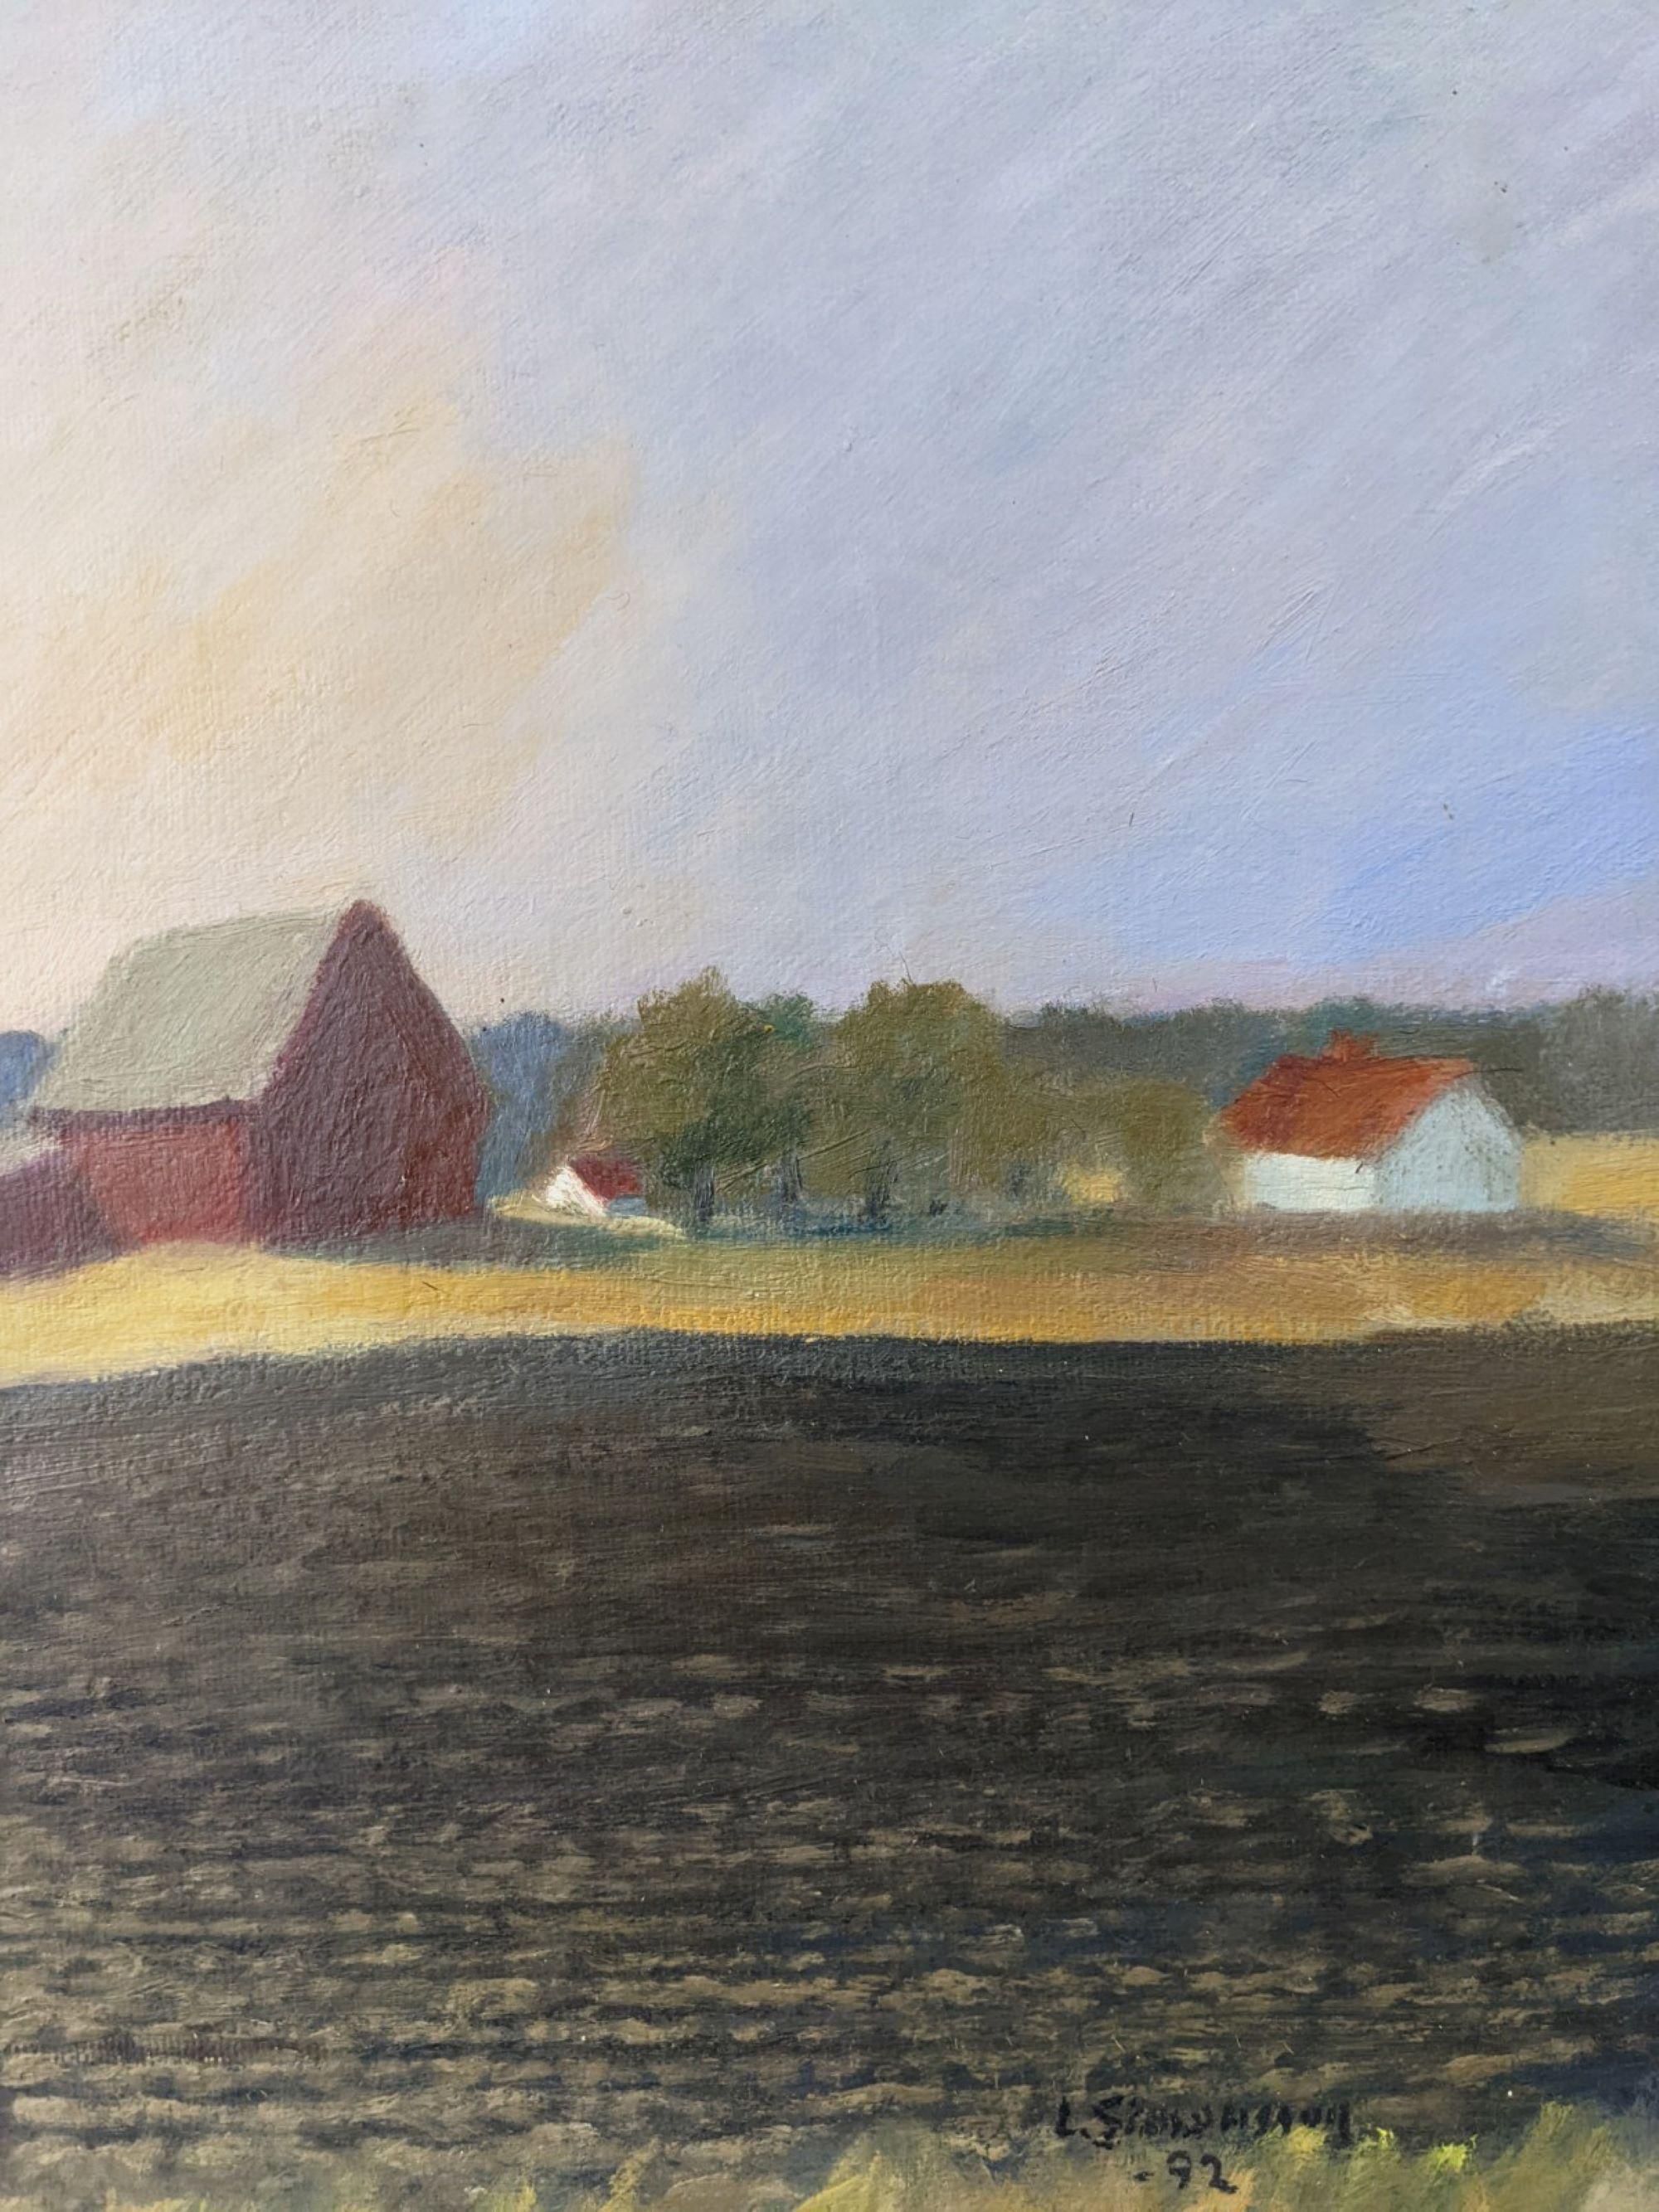 1992 Vintage Modernist Swedish Landscape Oil Painting - Sunset Fields, Framed For Sale 1